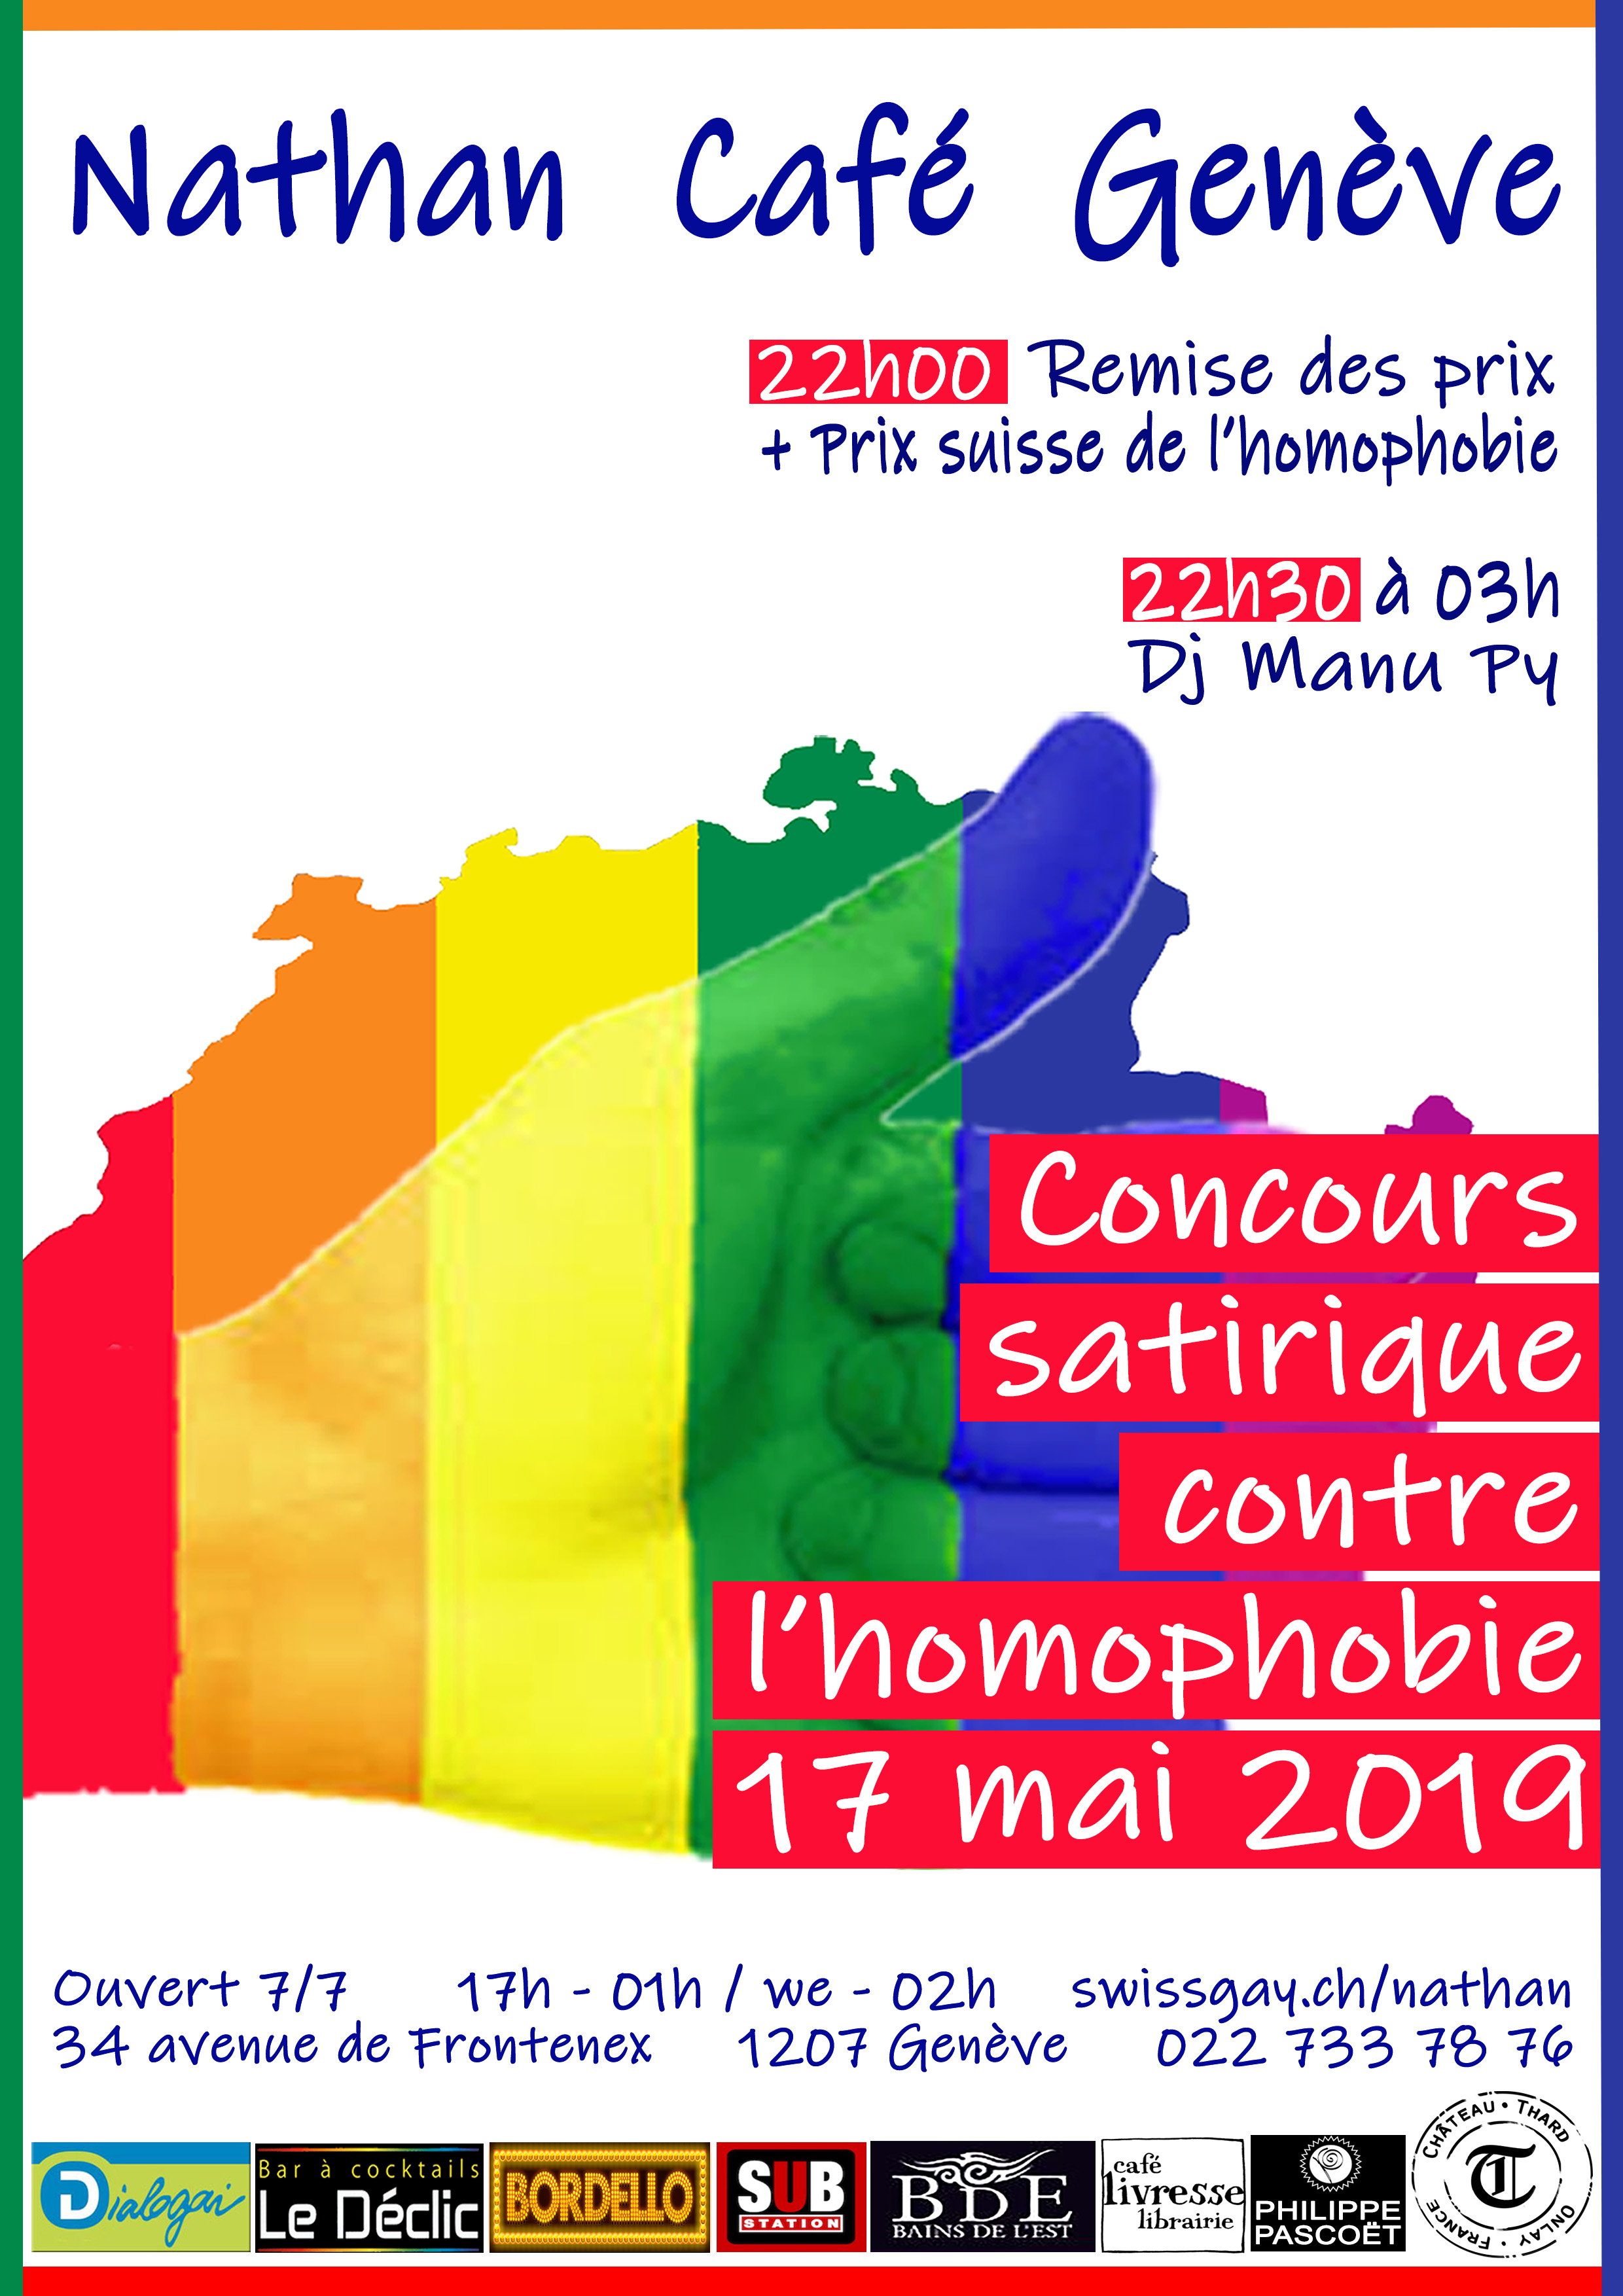 Nathan Café Genève - Concours contre l'homophobie 2019